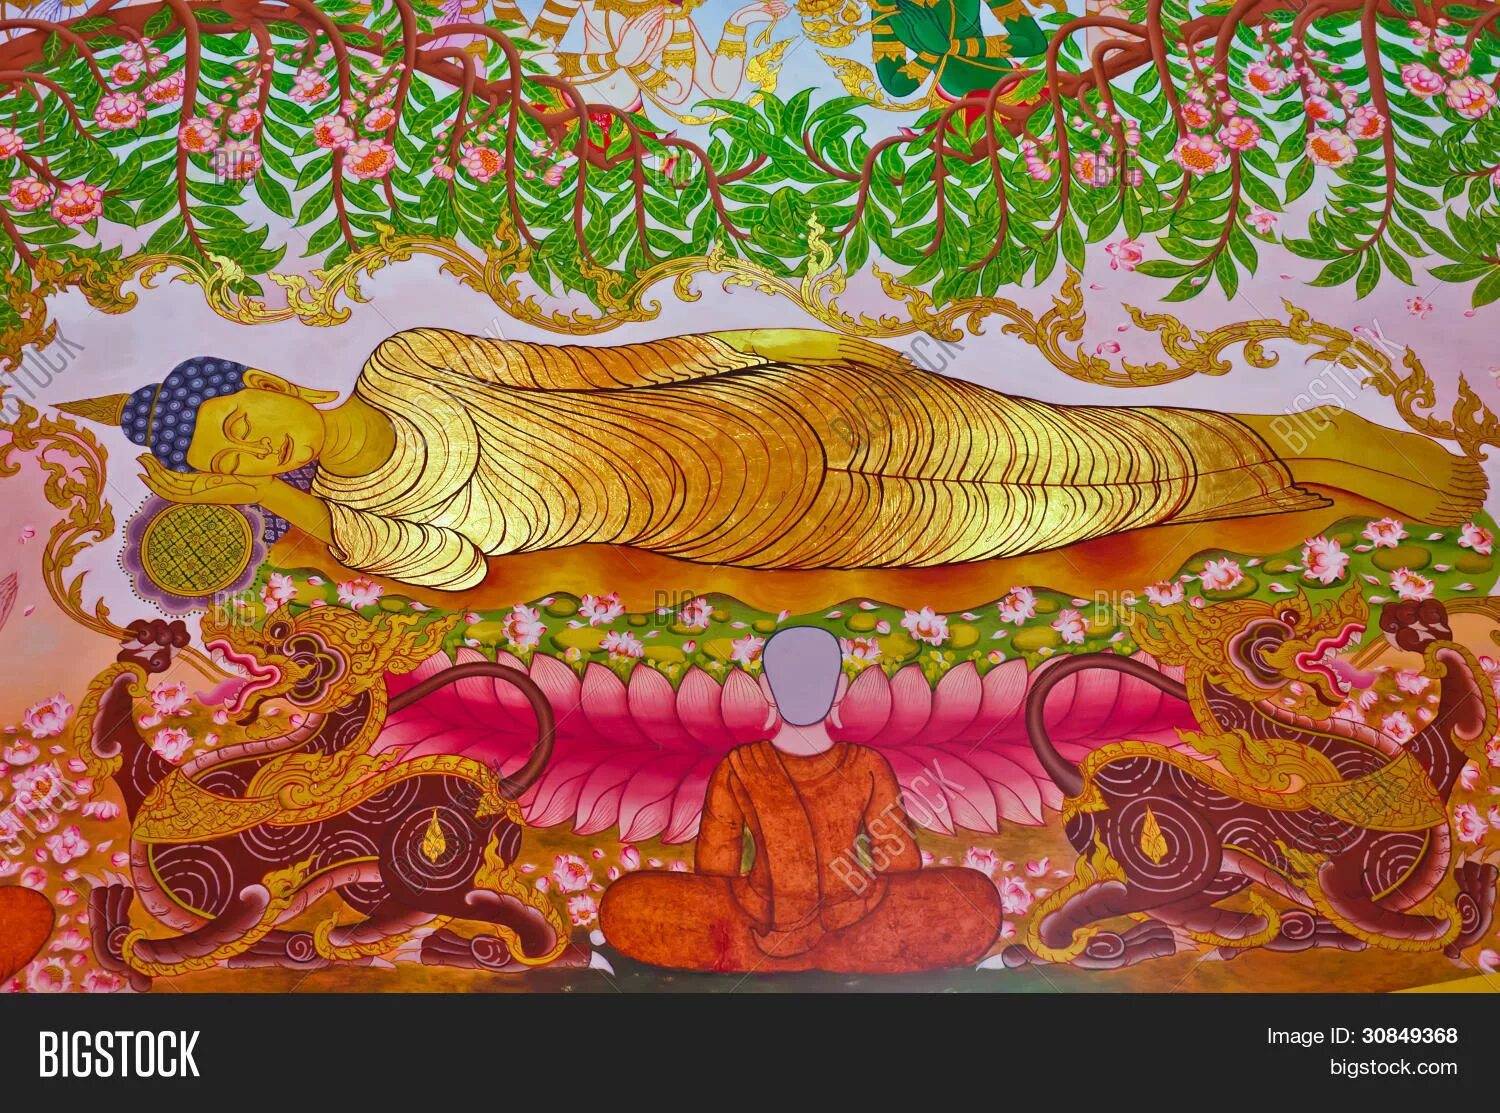 После смерти в буддизме. Нирвана Шакьямуни спящий Будда. Паринирвана Будды. Живопись буддизм Нирвана. Будда Шакьямуни в нирване.